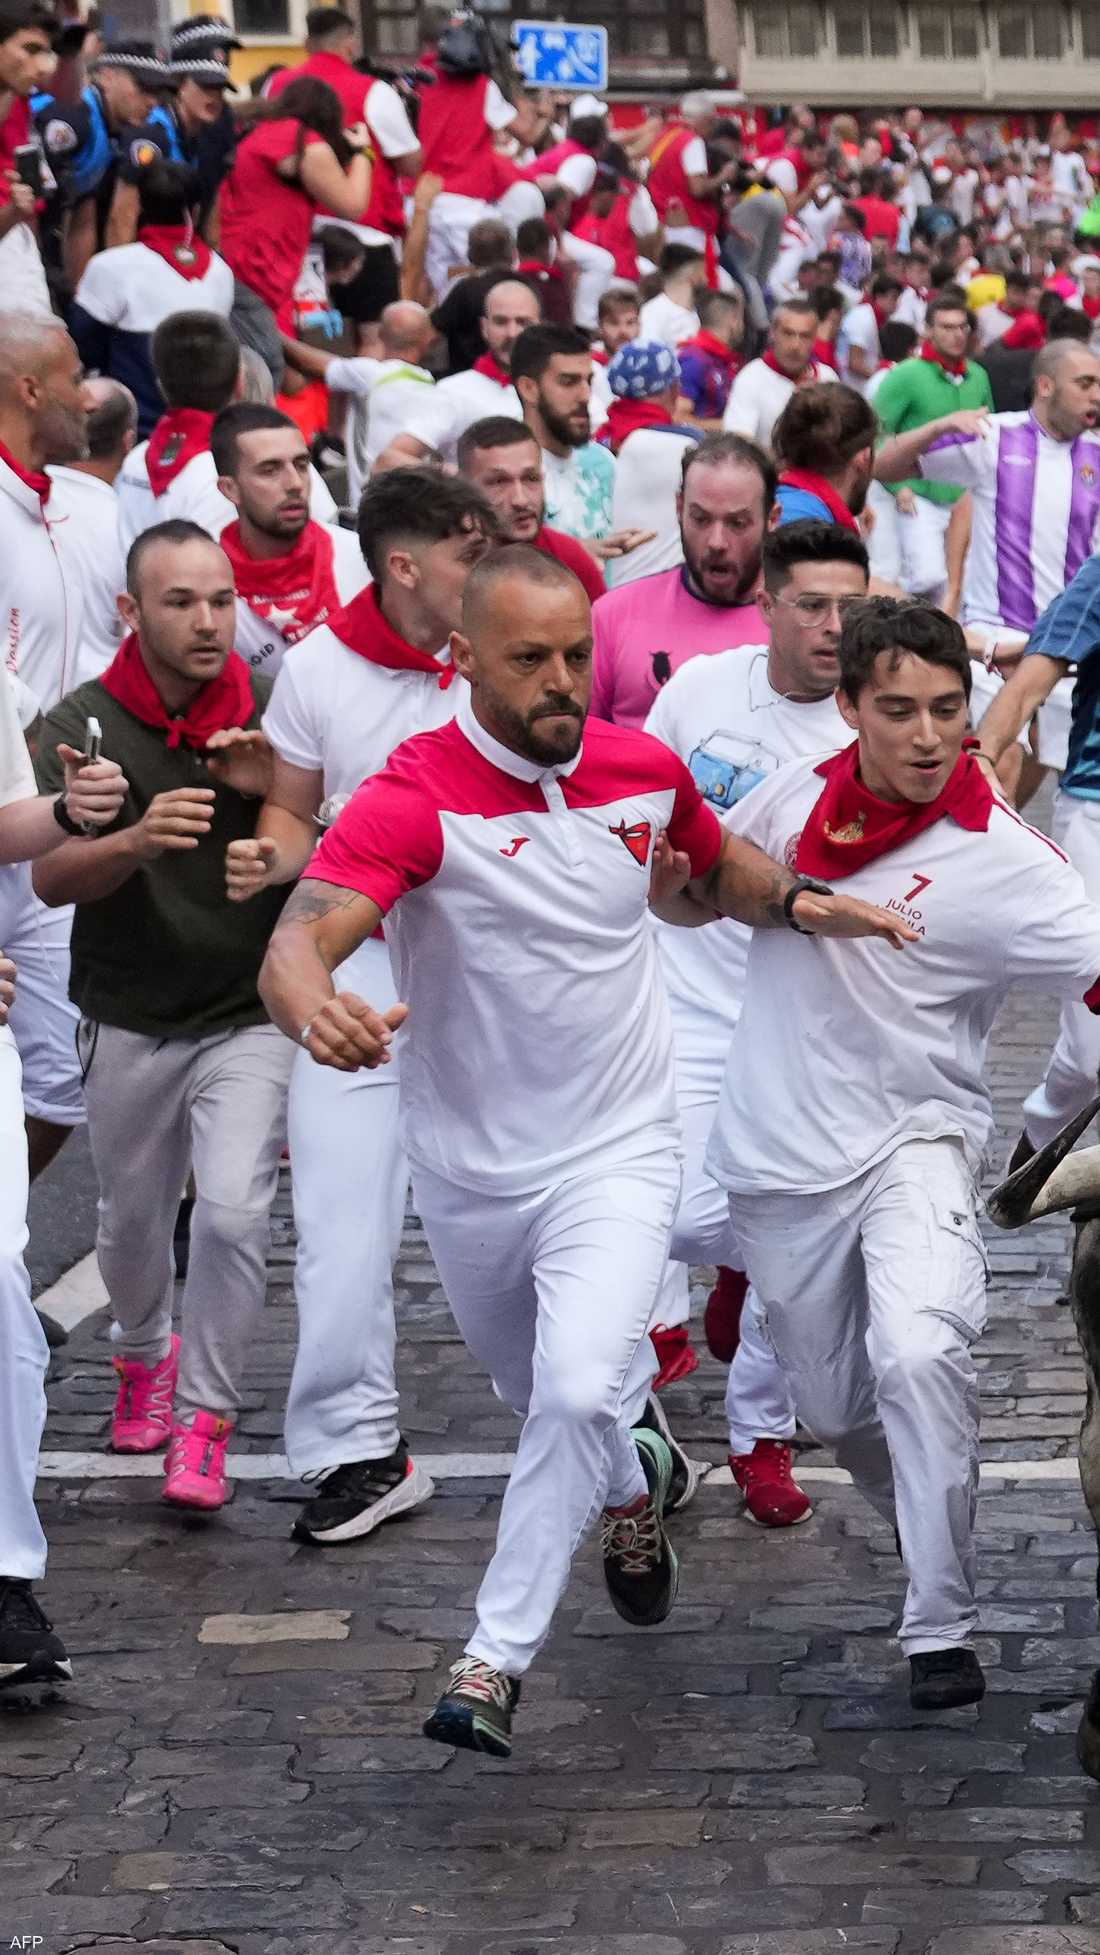 الركض مع الثيران مهرجان يتميز بالإثارة في إسبانيا